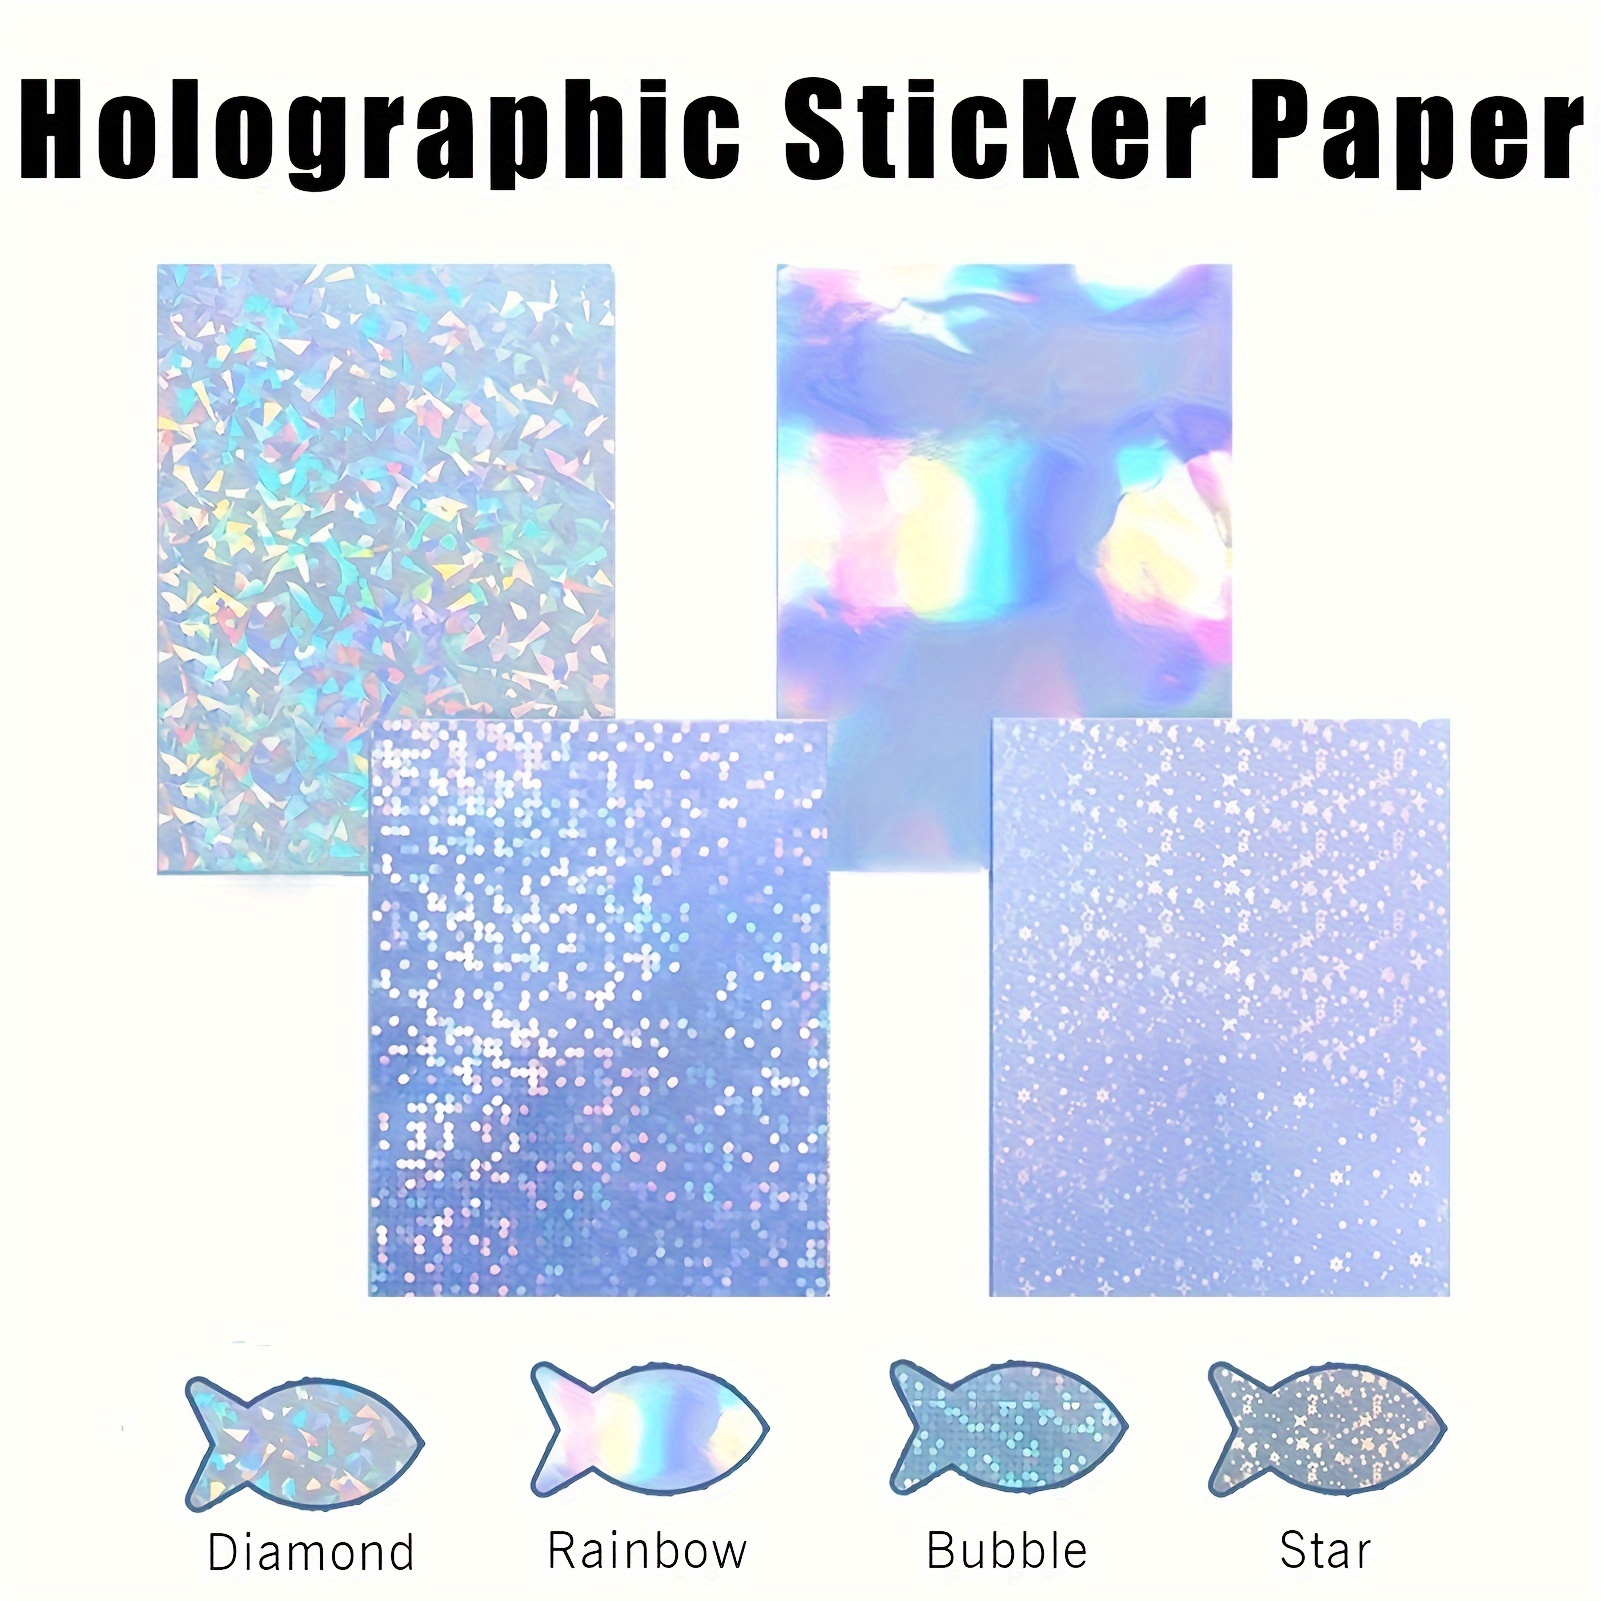 72 feuilles de papier autocollant holographique avec des motifs d